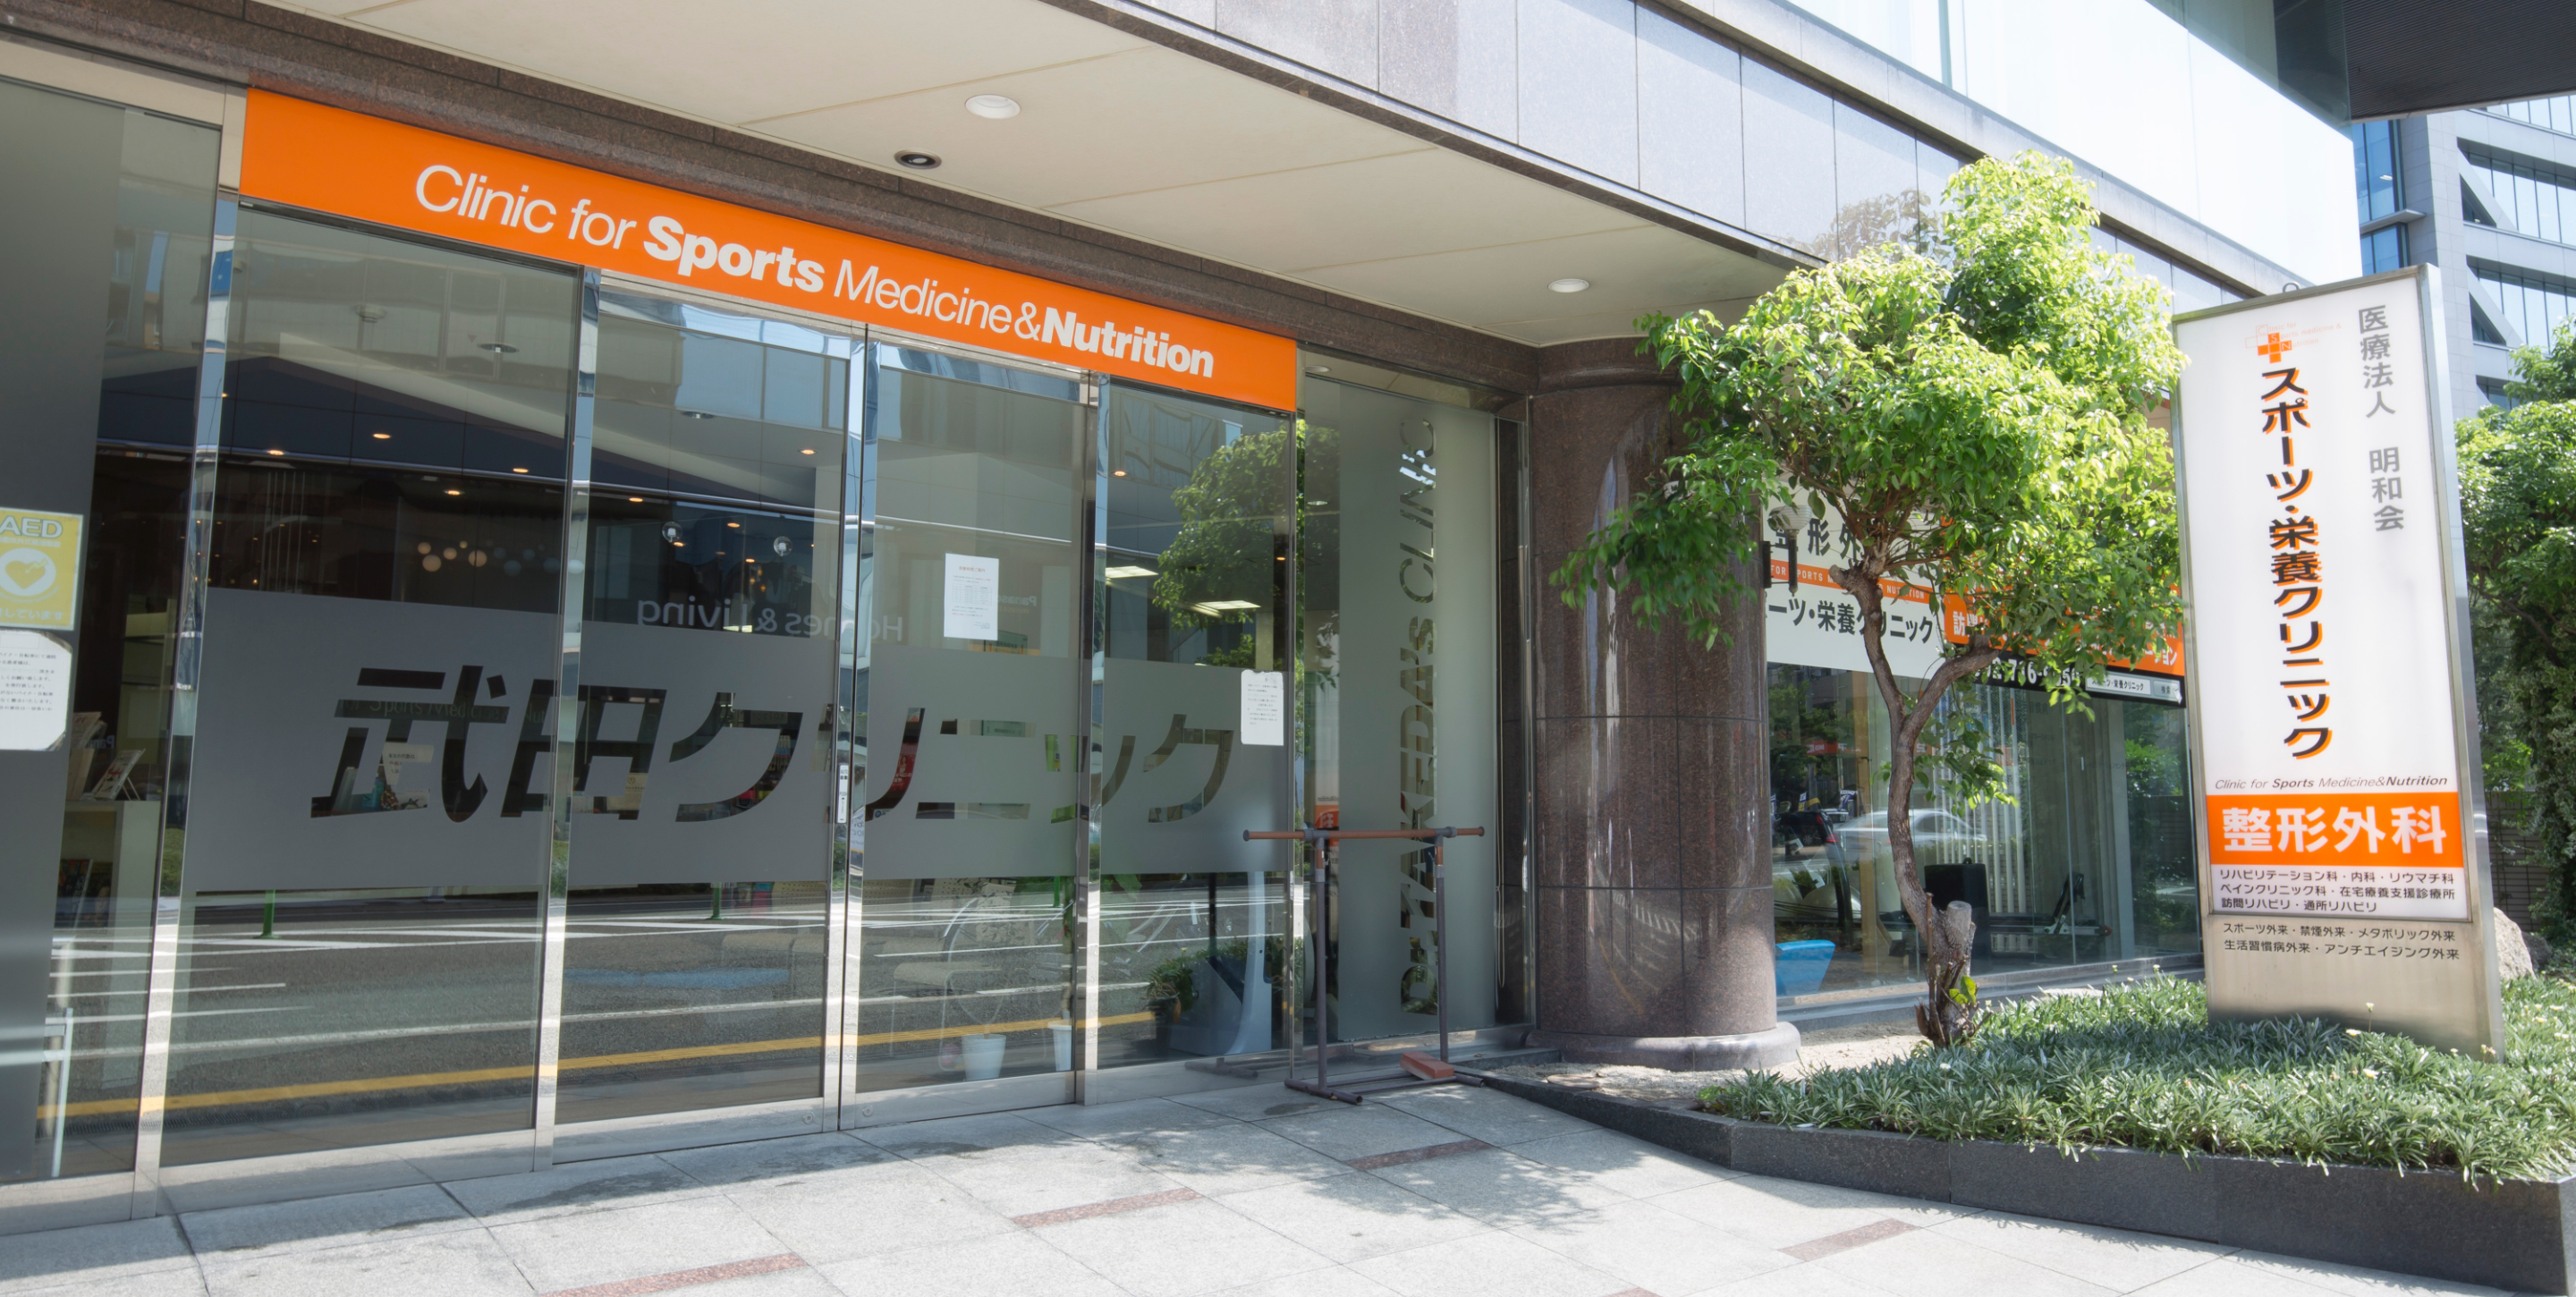 東京 スポーツ & 整形 外科 クリニック